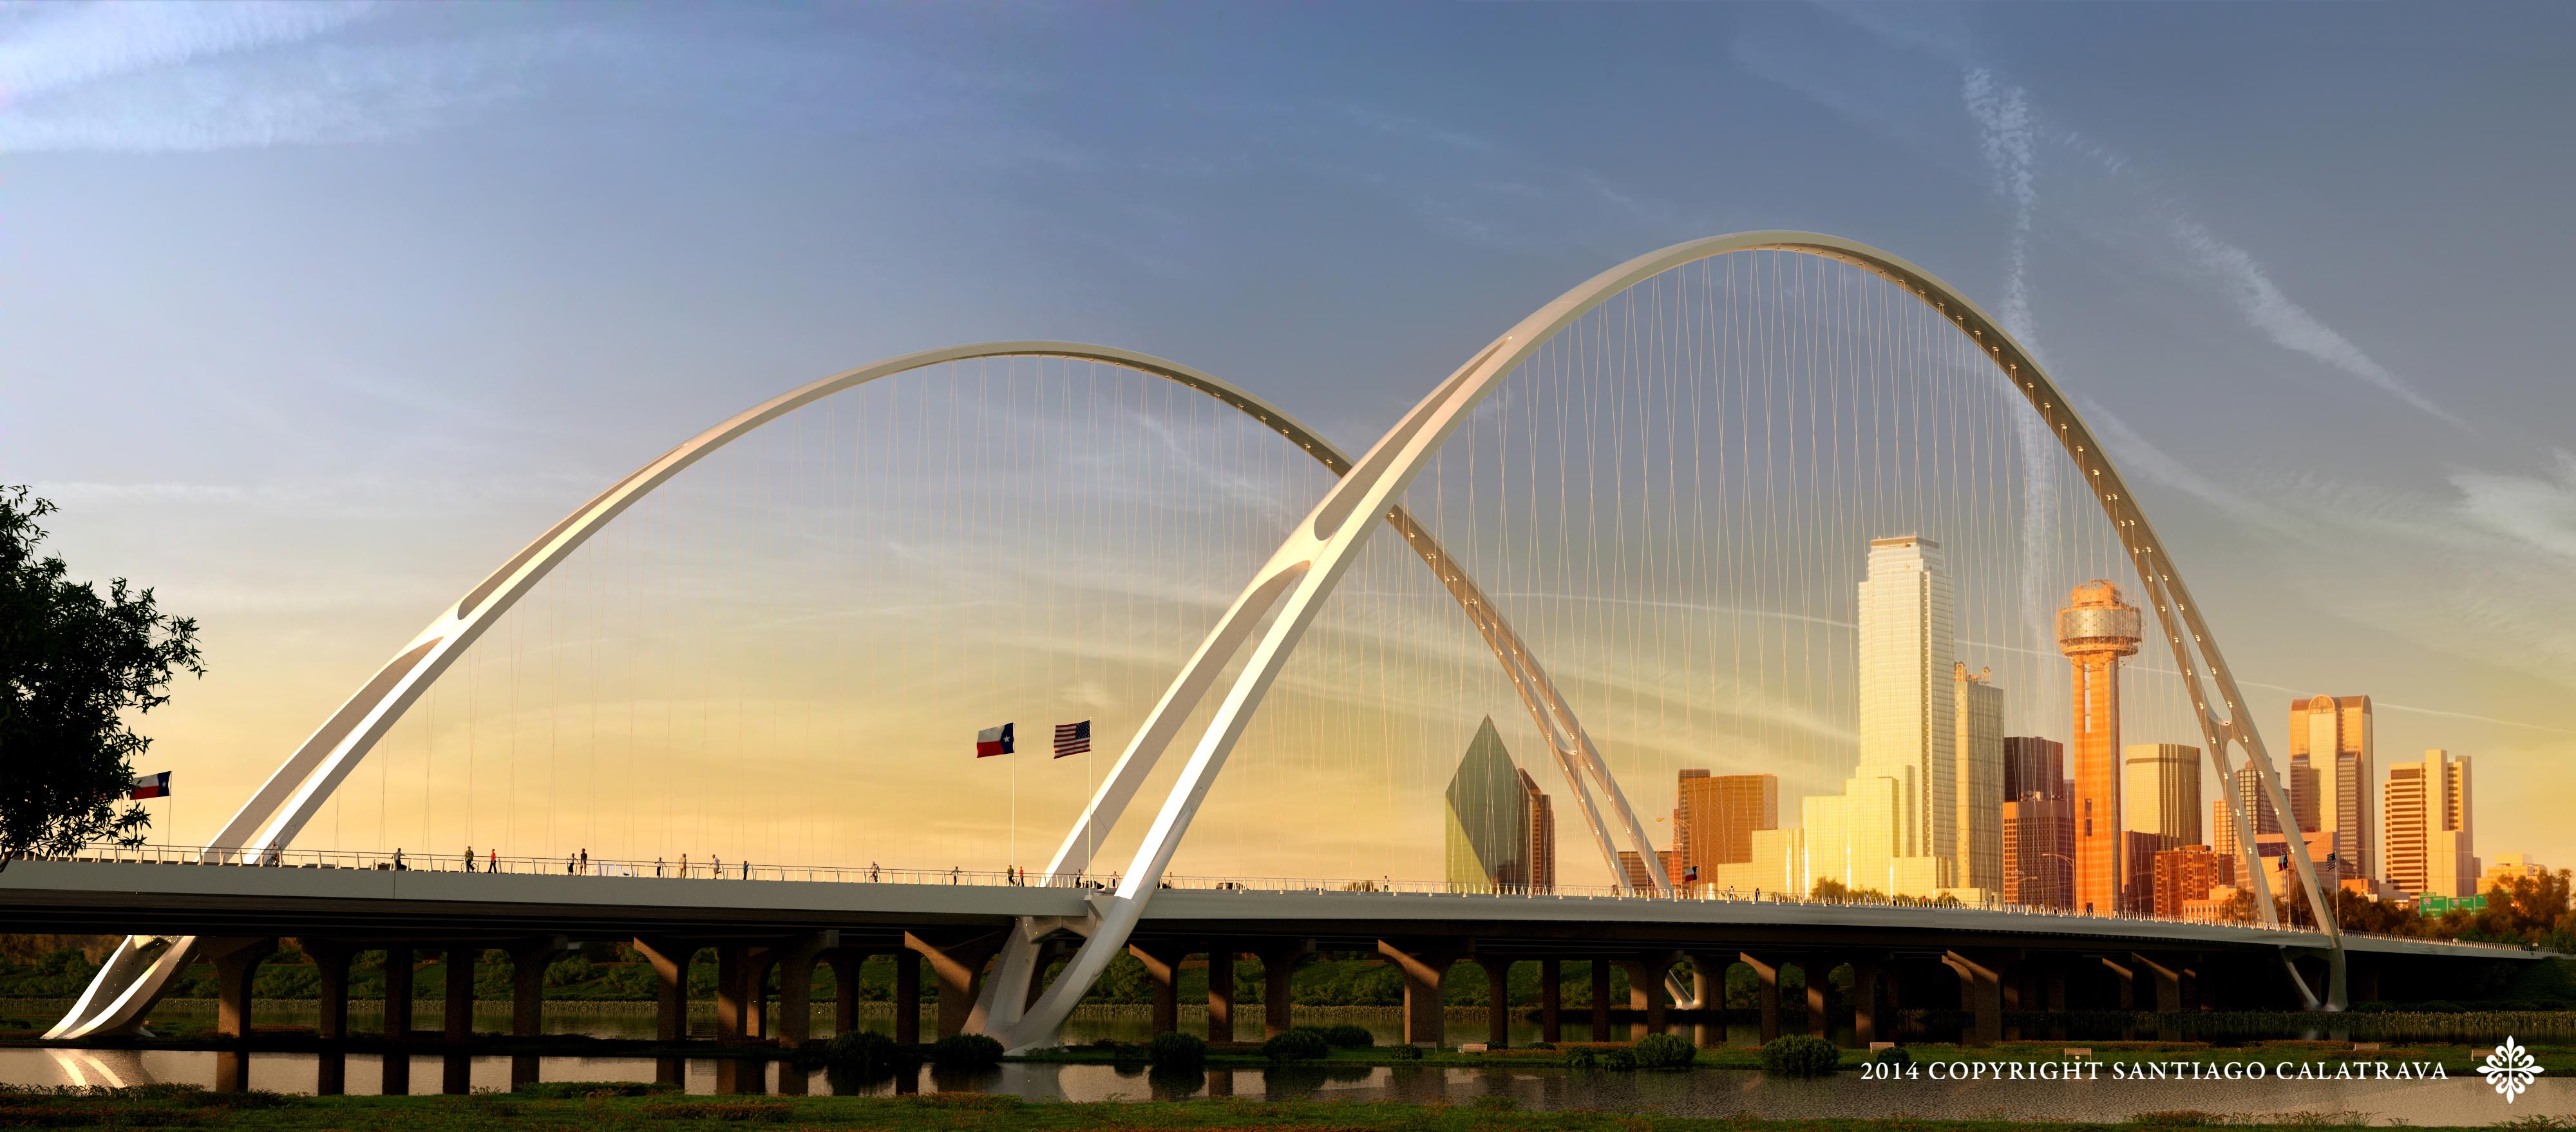 Building Bridges: Santiago Calatrava's Elegant Arches Rise Above 